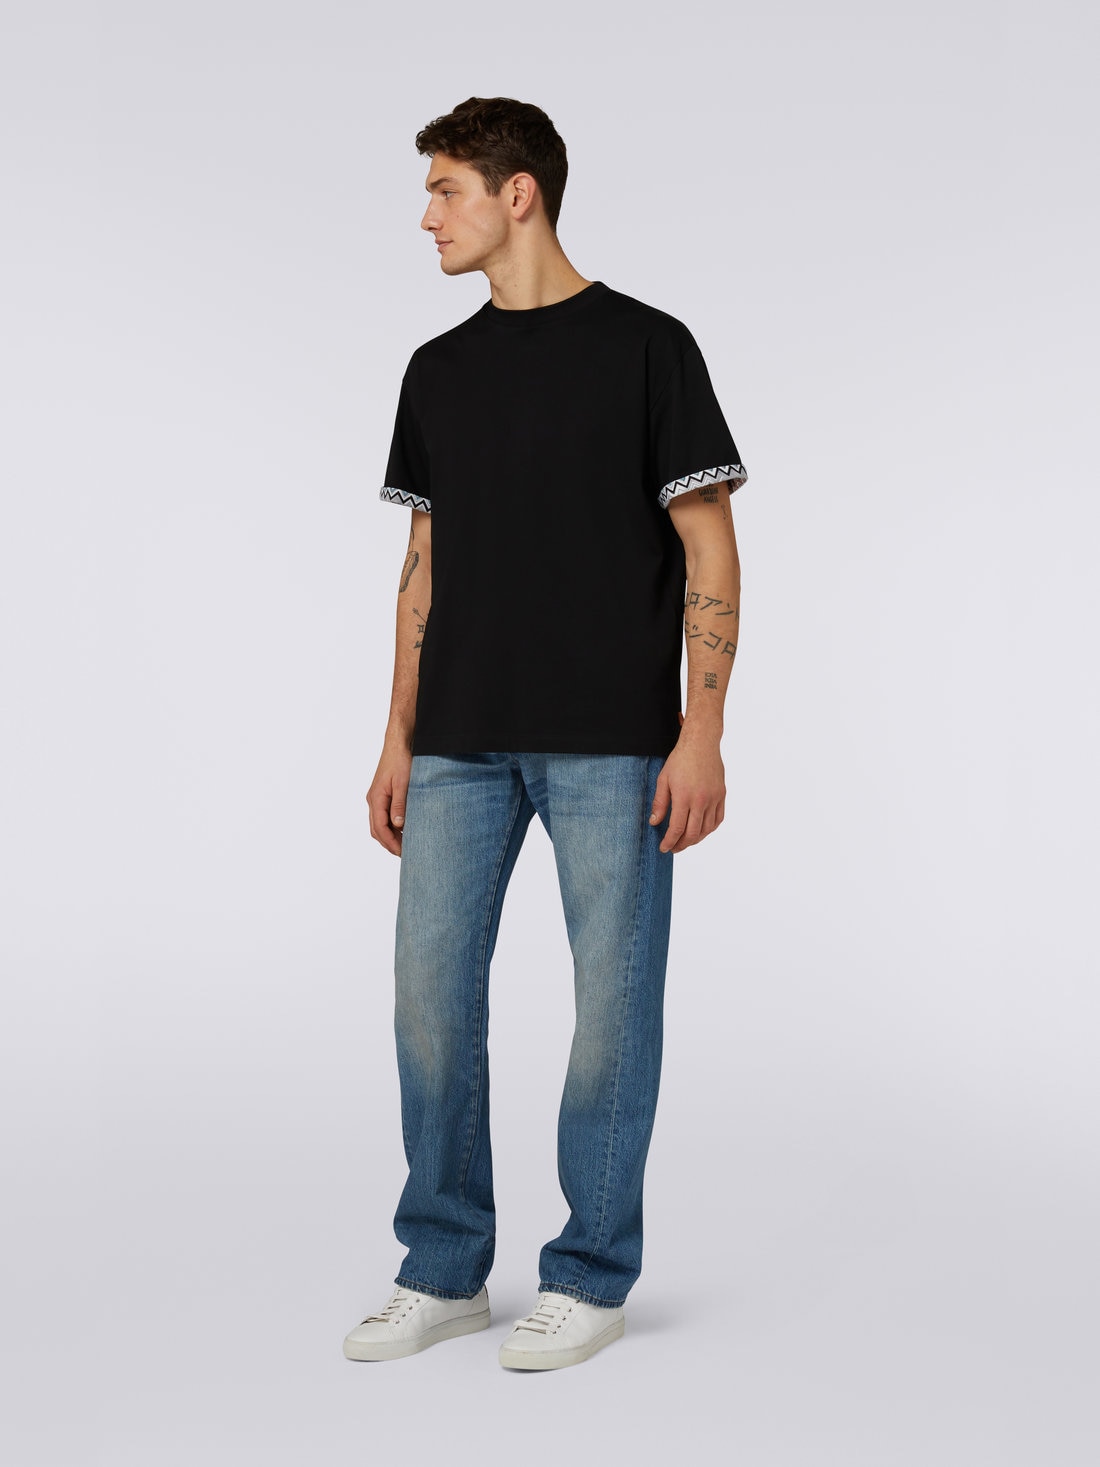 T-shirt girocollo in cotone con inserto in maglia, Nero    - US23SL03BJ00DES91DK - 1